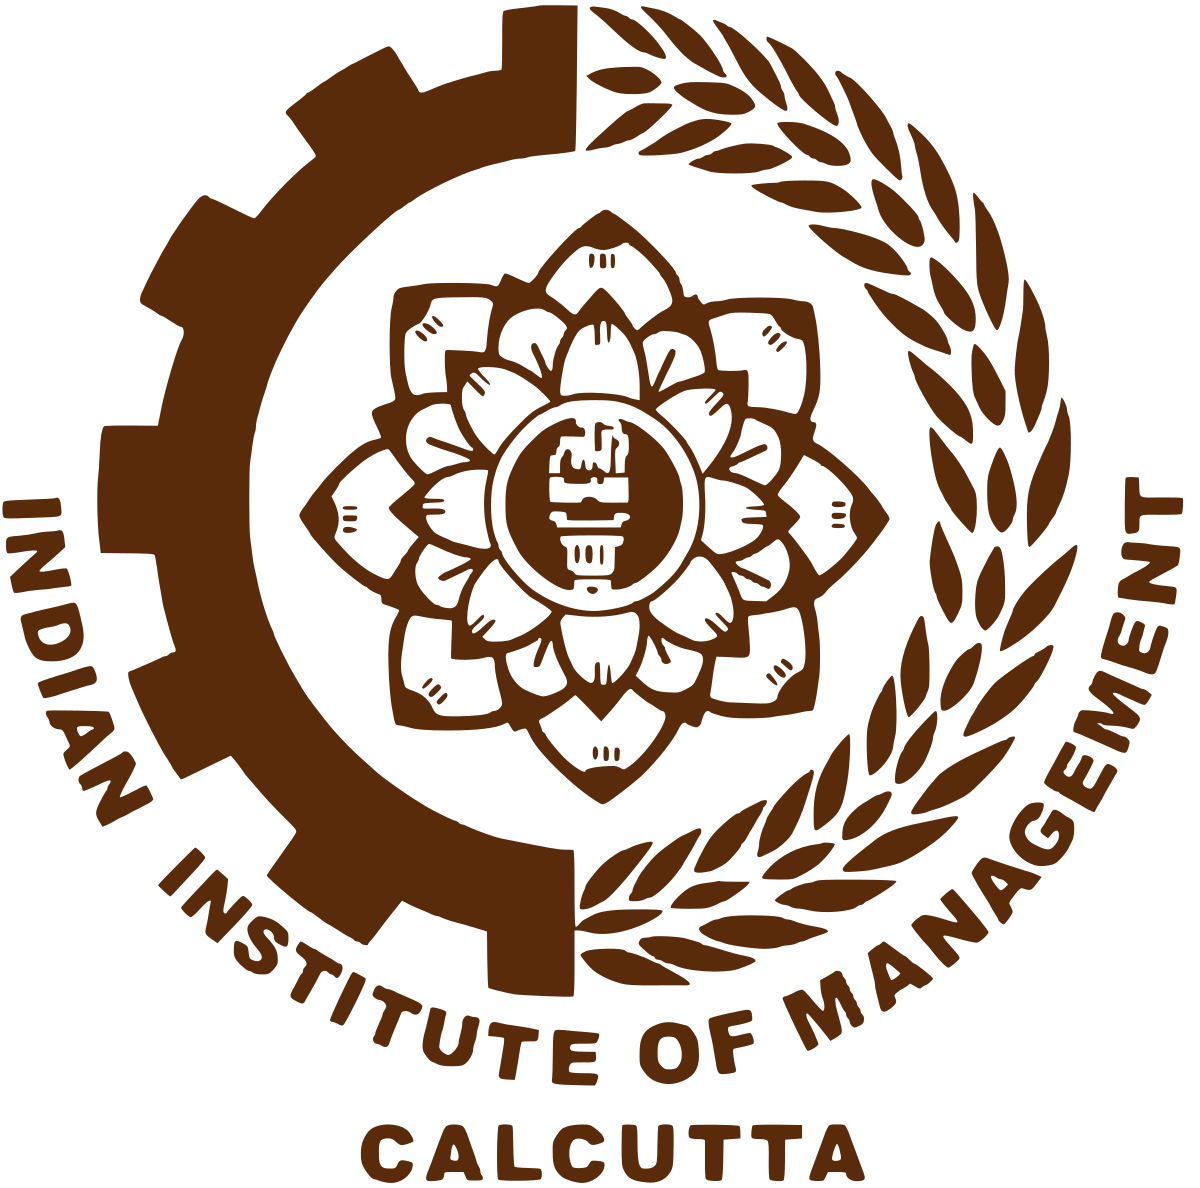 IIM Calcutta 2nd in Asia in Financial Times rankings